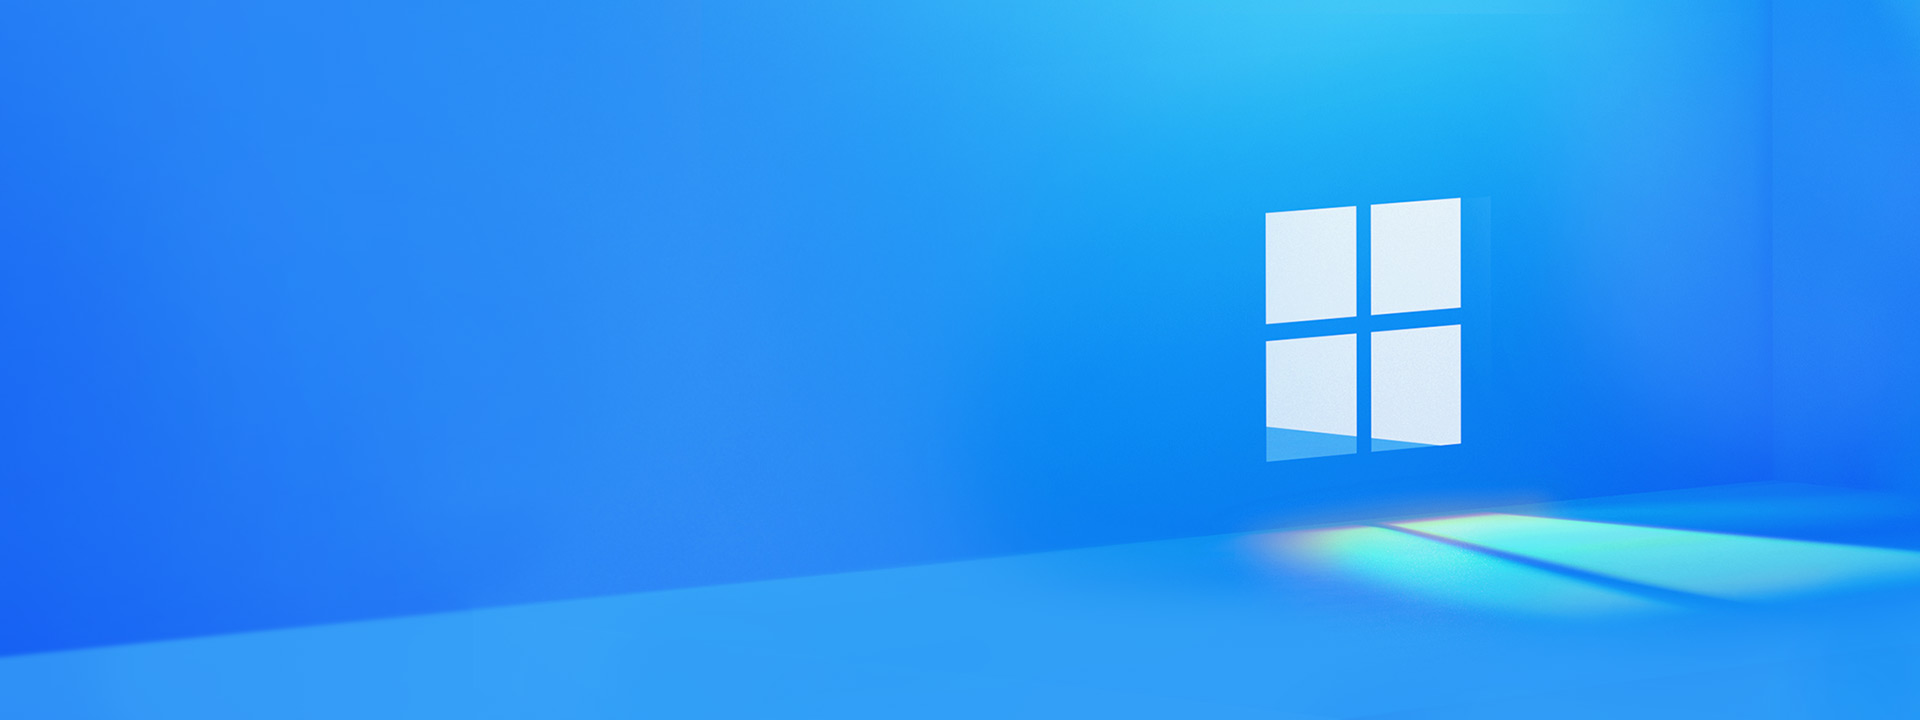 Windows 11 yêu cầu cấu hình máy tính thế nào  MKL Quốc Tế